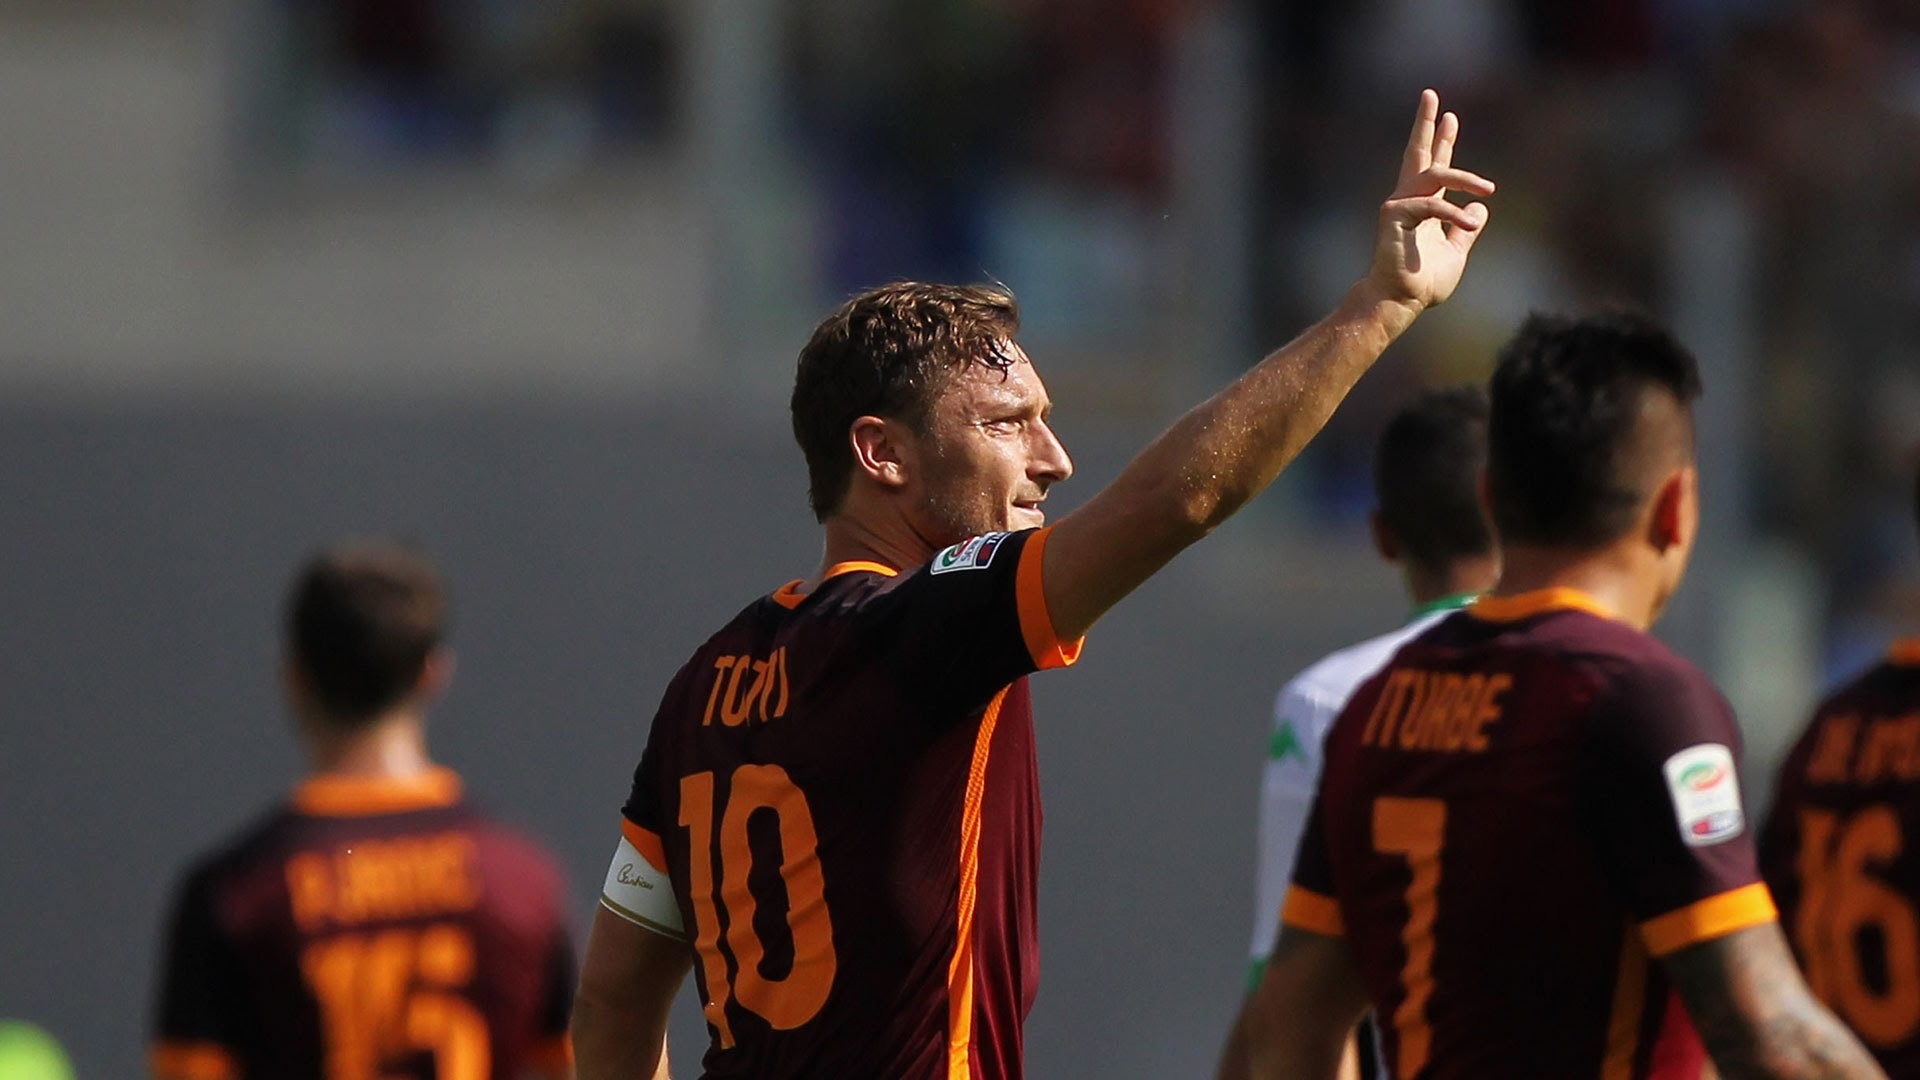 1920x1080 Francesco Totti | El tiempo pasa - HD 2015/16